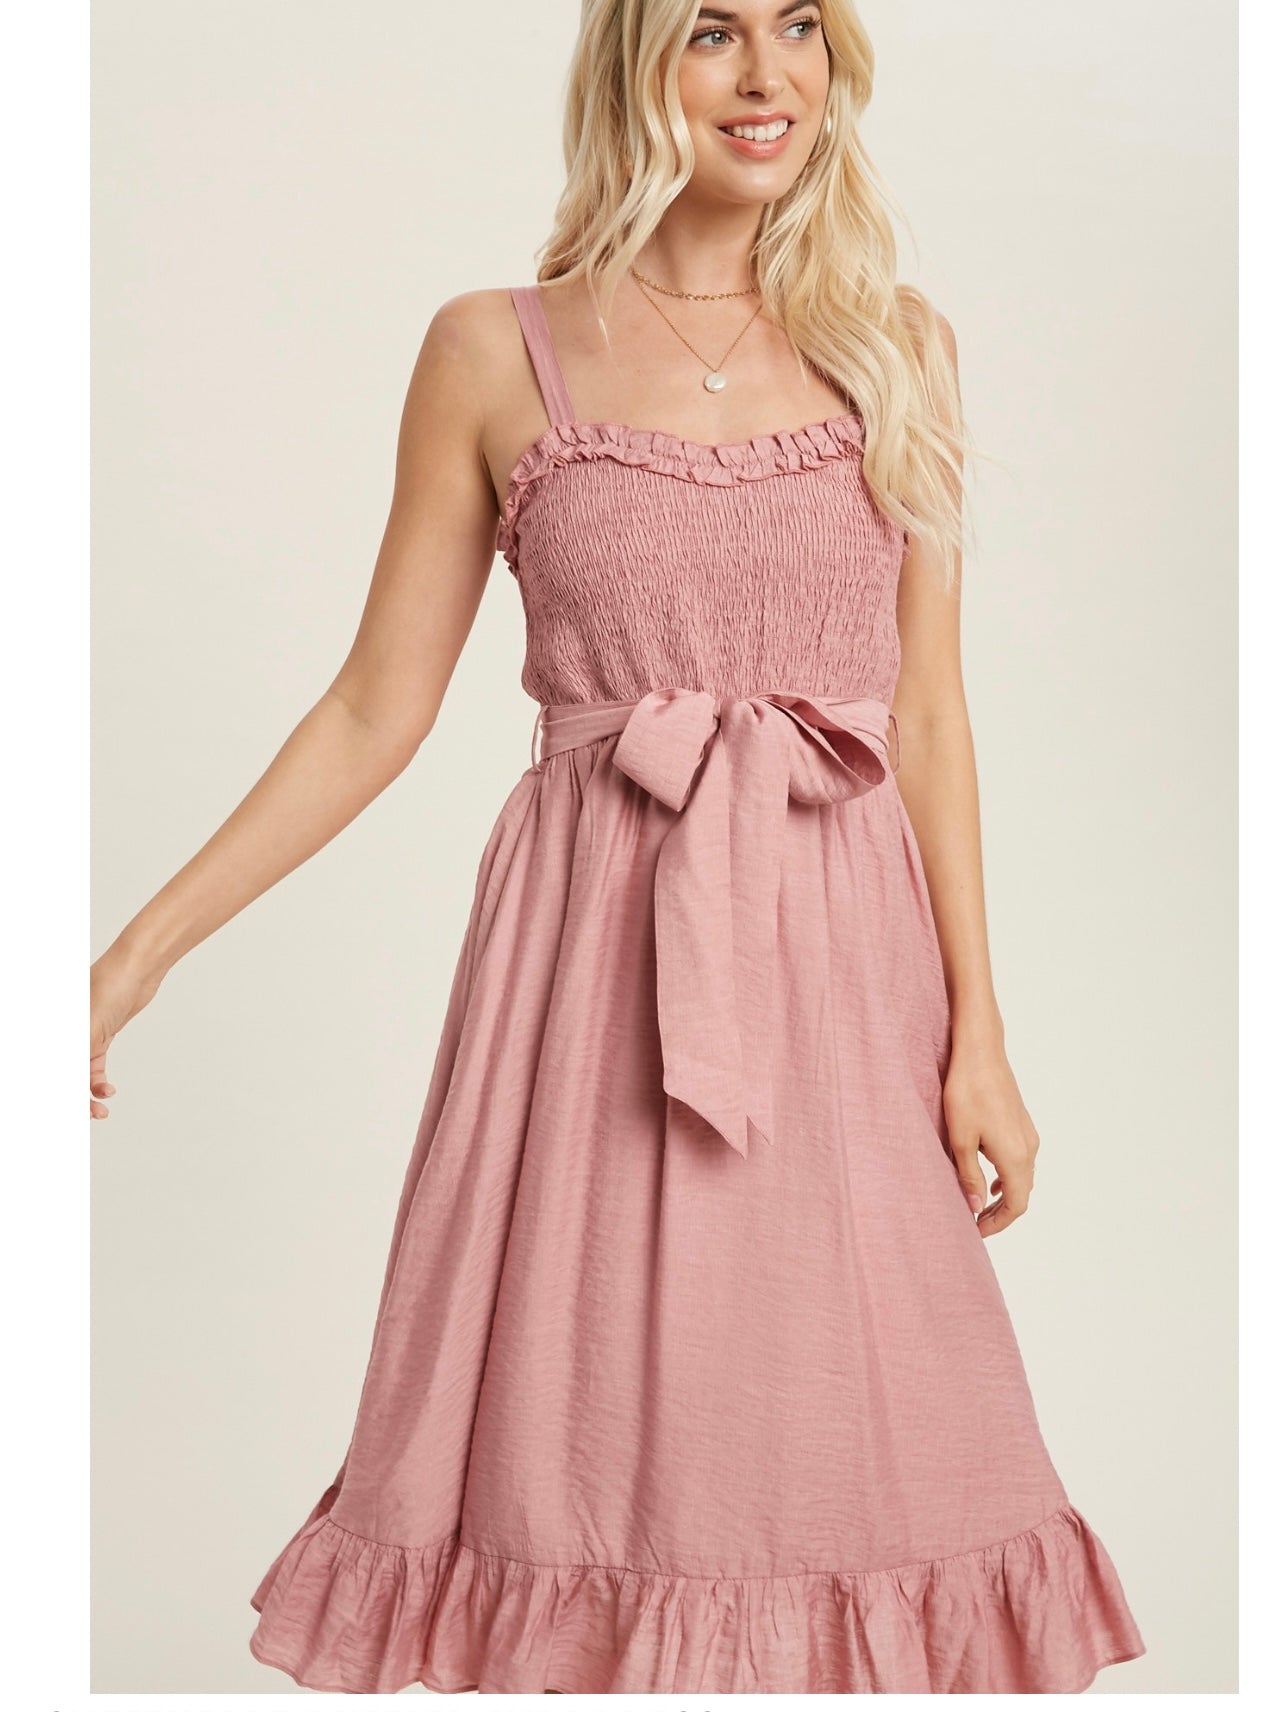 Sweetheart Ruffled Midi Dress in Dusty Pink